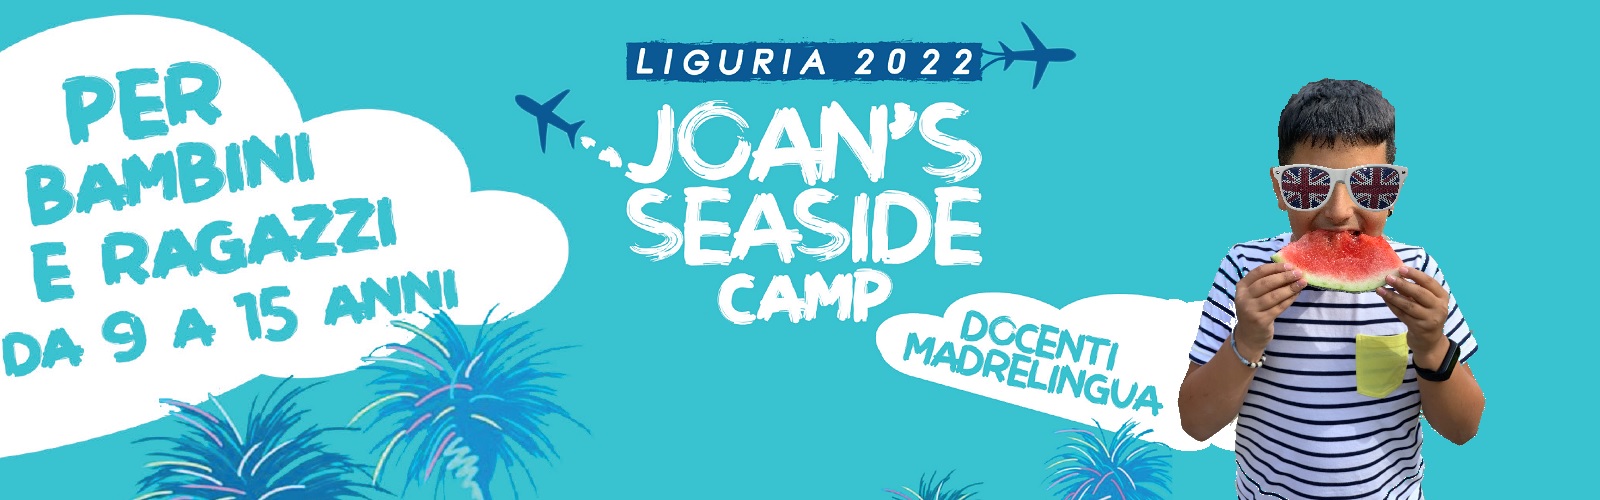 Joan's Seaside Camp 2022